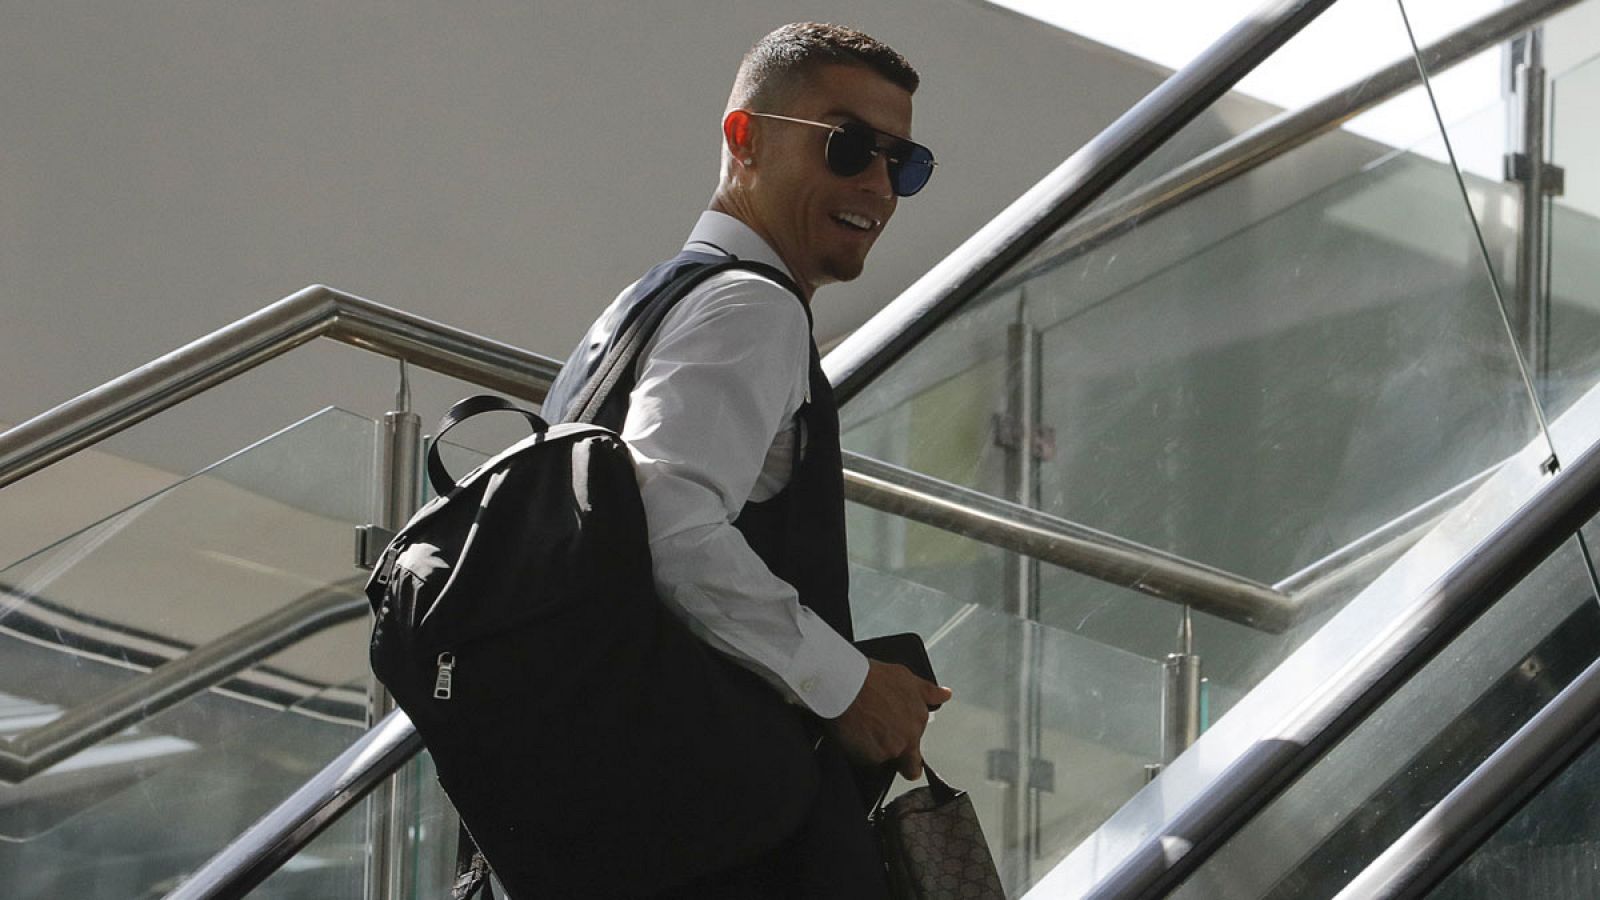 Cristiano Ronaldo ha sido acusado de violación por unos supuestos hechos ocurridos en 2009.